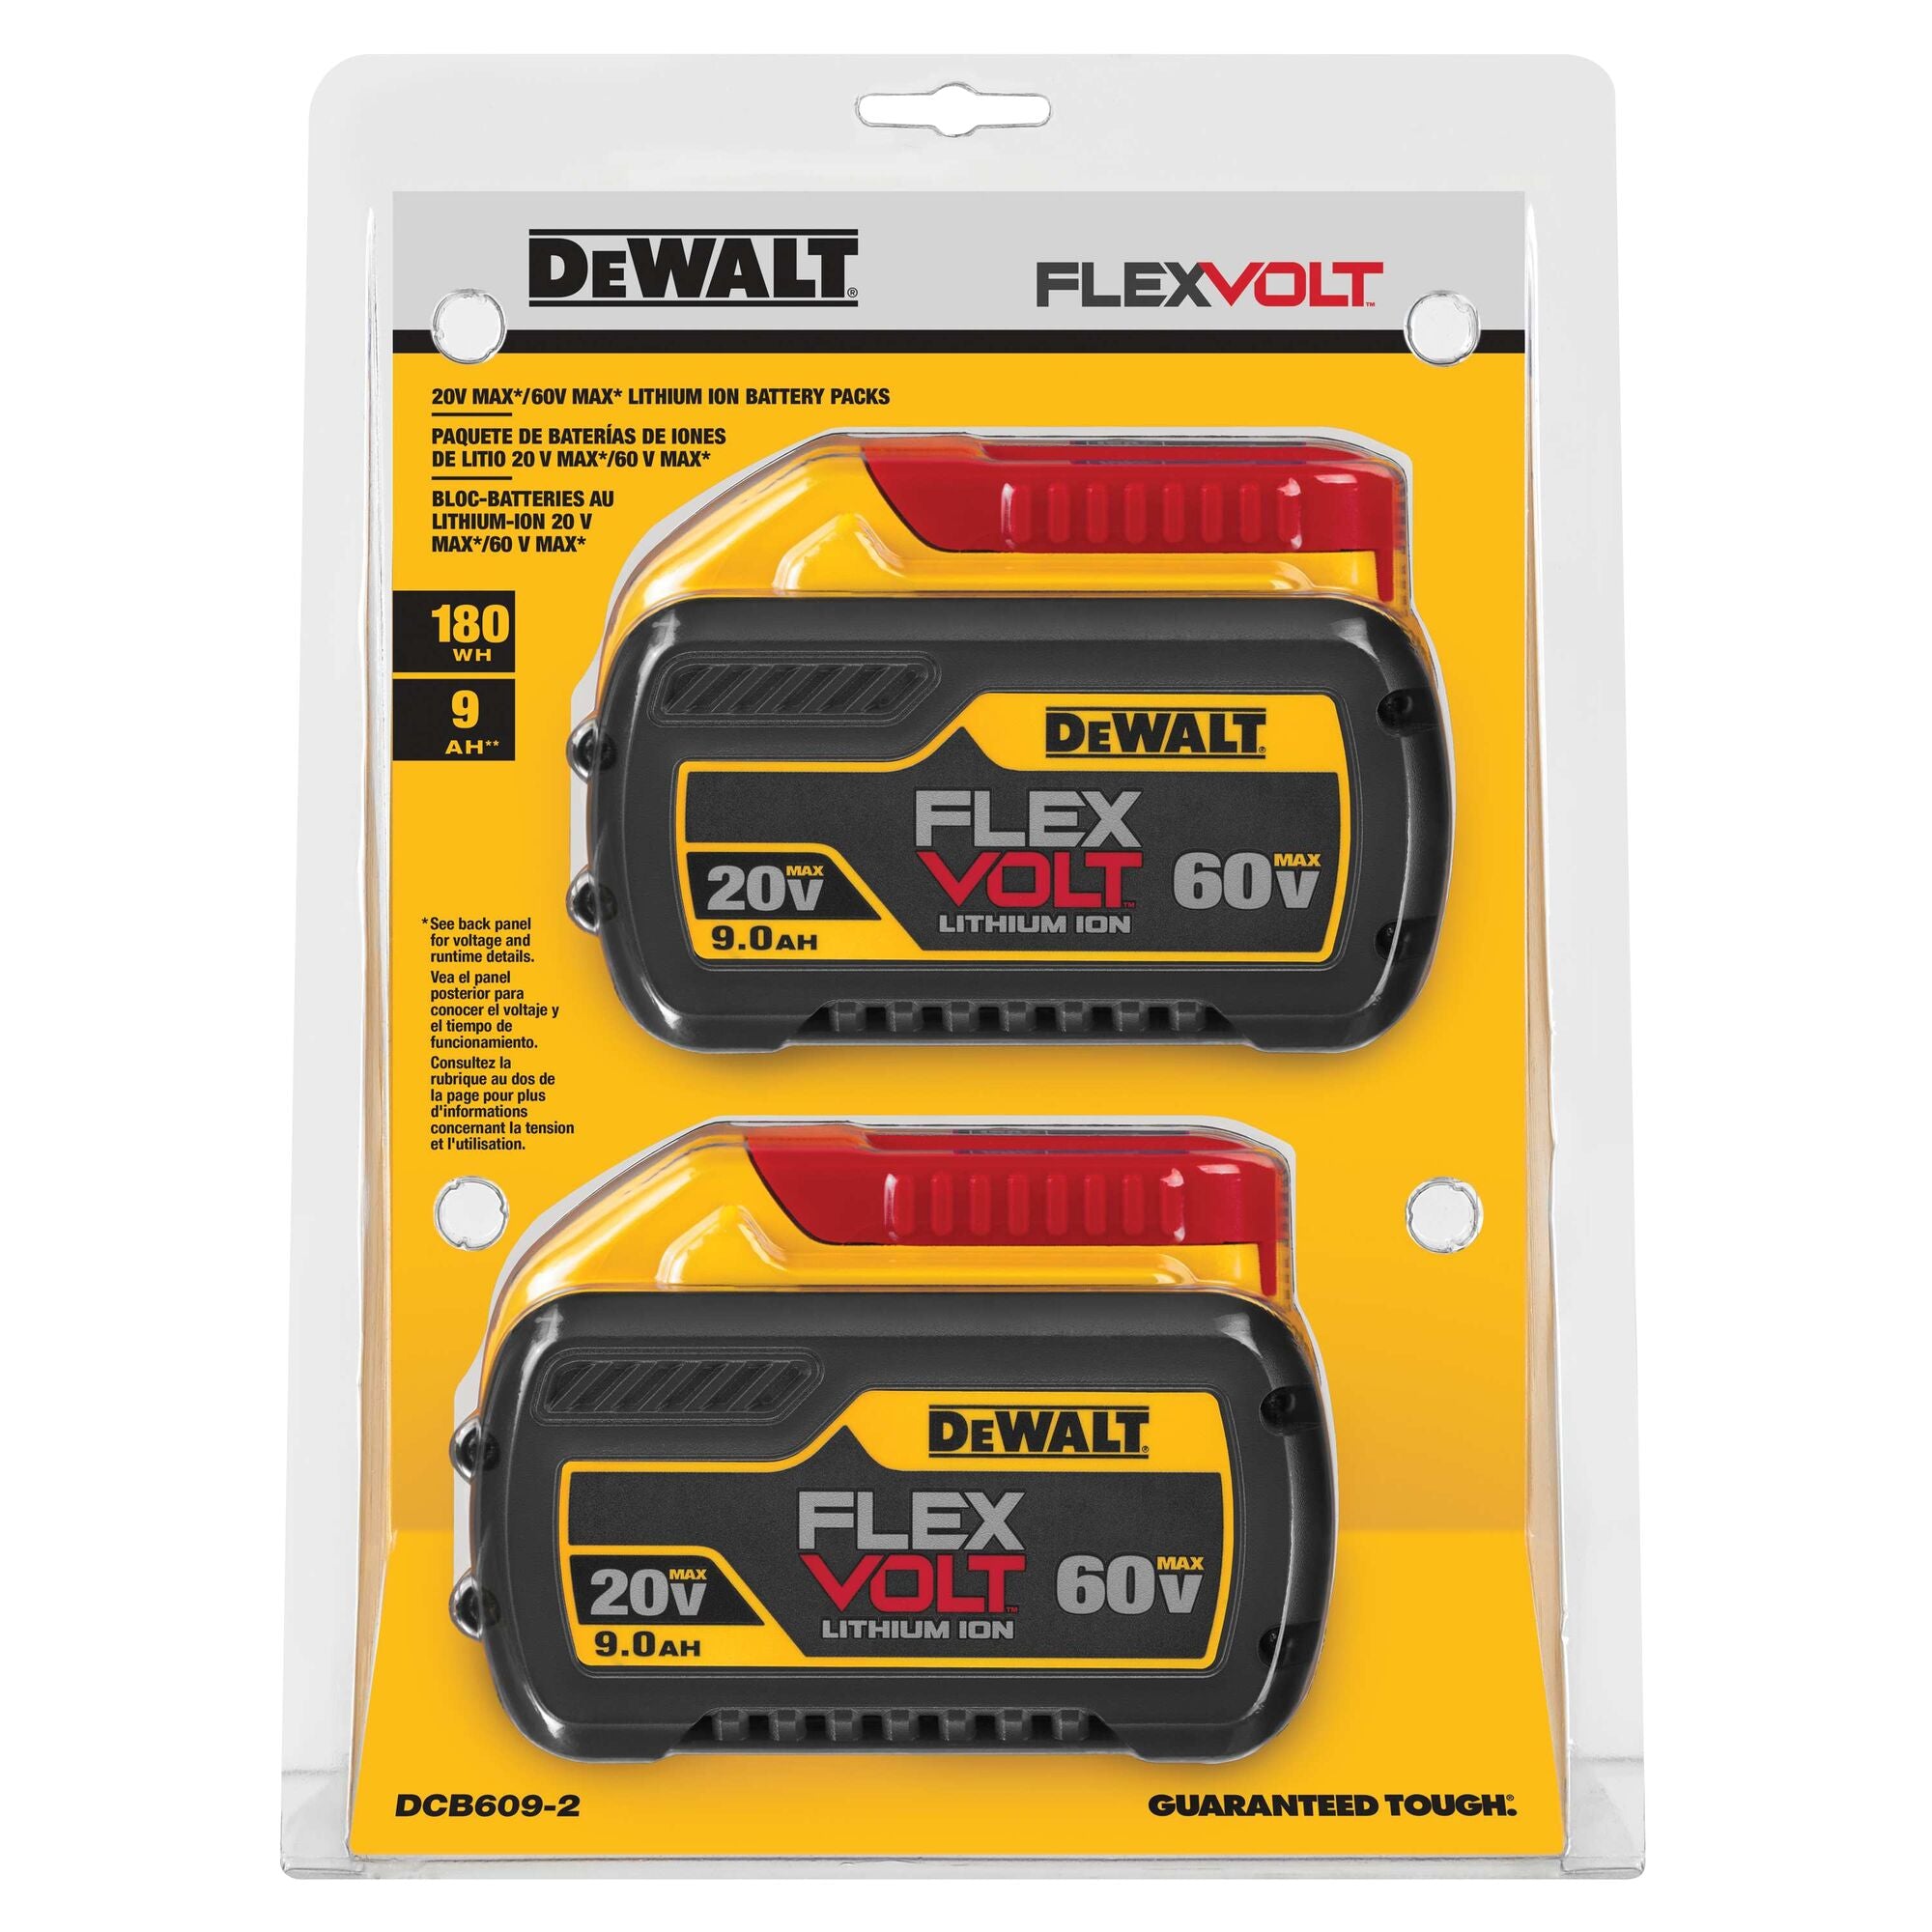 60 Volt /20 Volt 9 aH Flex Volt Dual DeWALT Battery Pack